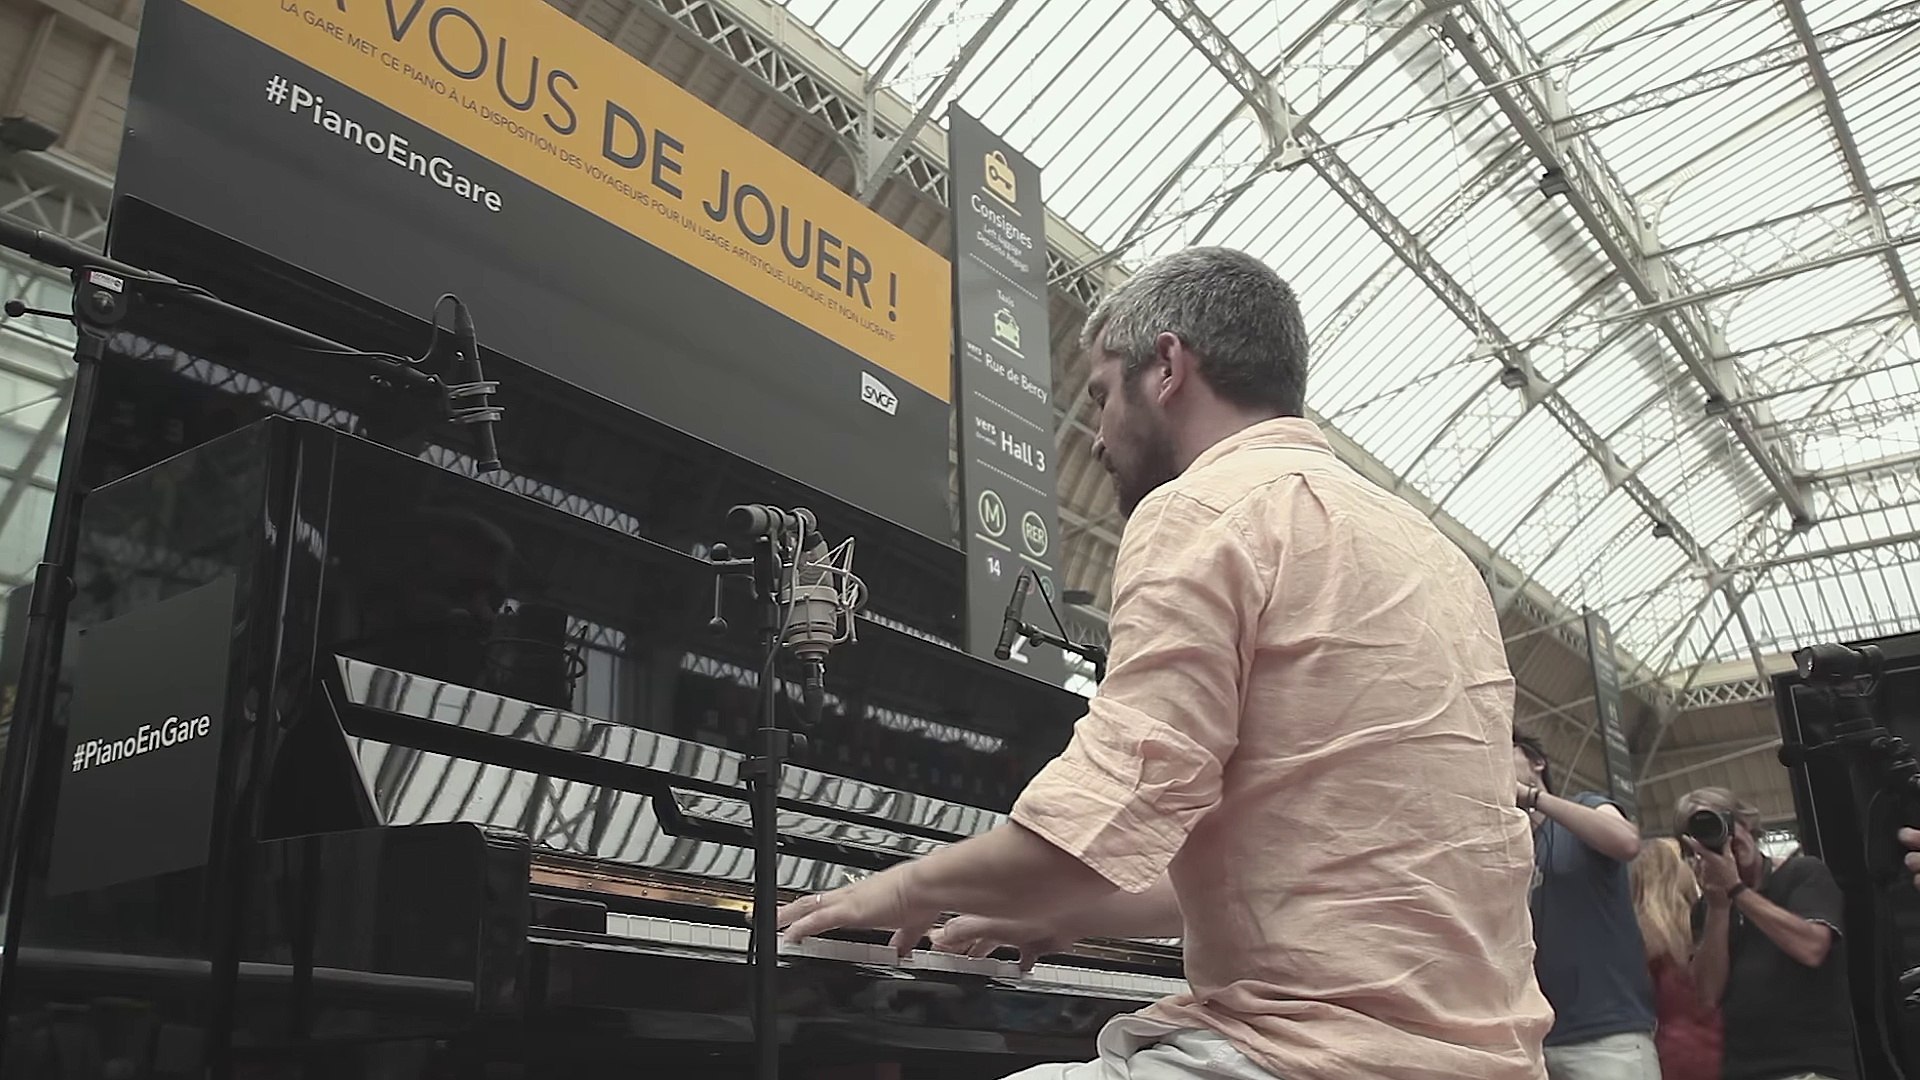 Grégoire reprend Oasis avec un piano dans une gare - Vidéo Dailymotion